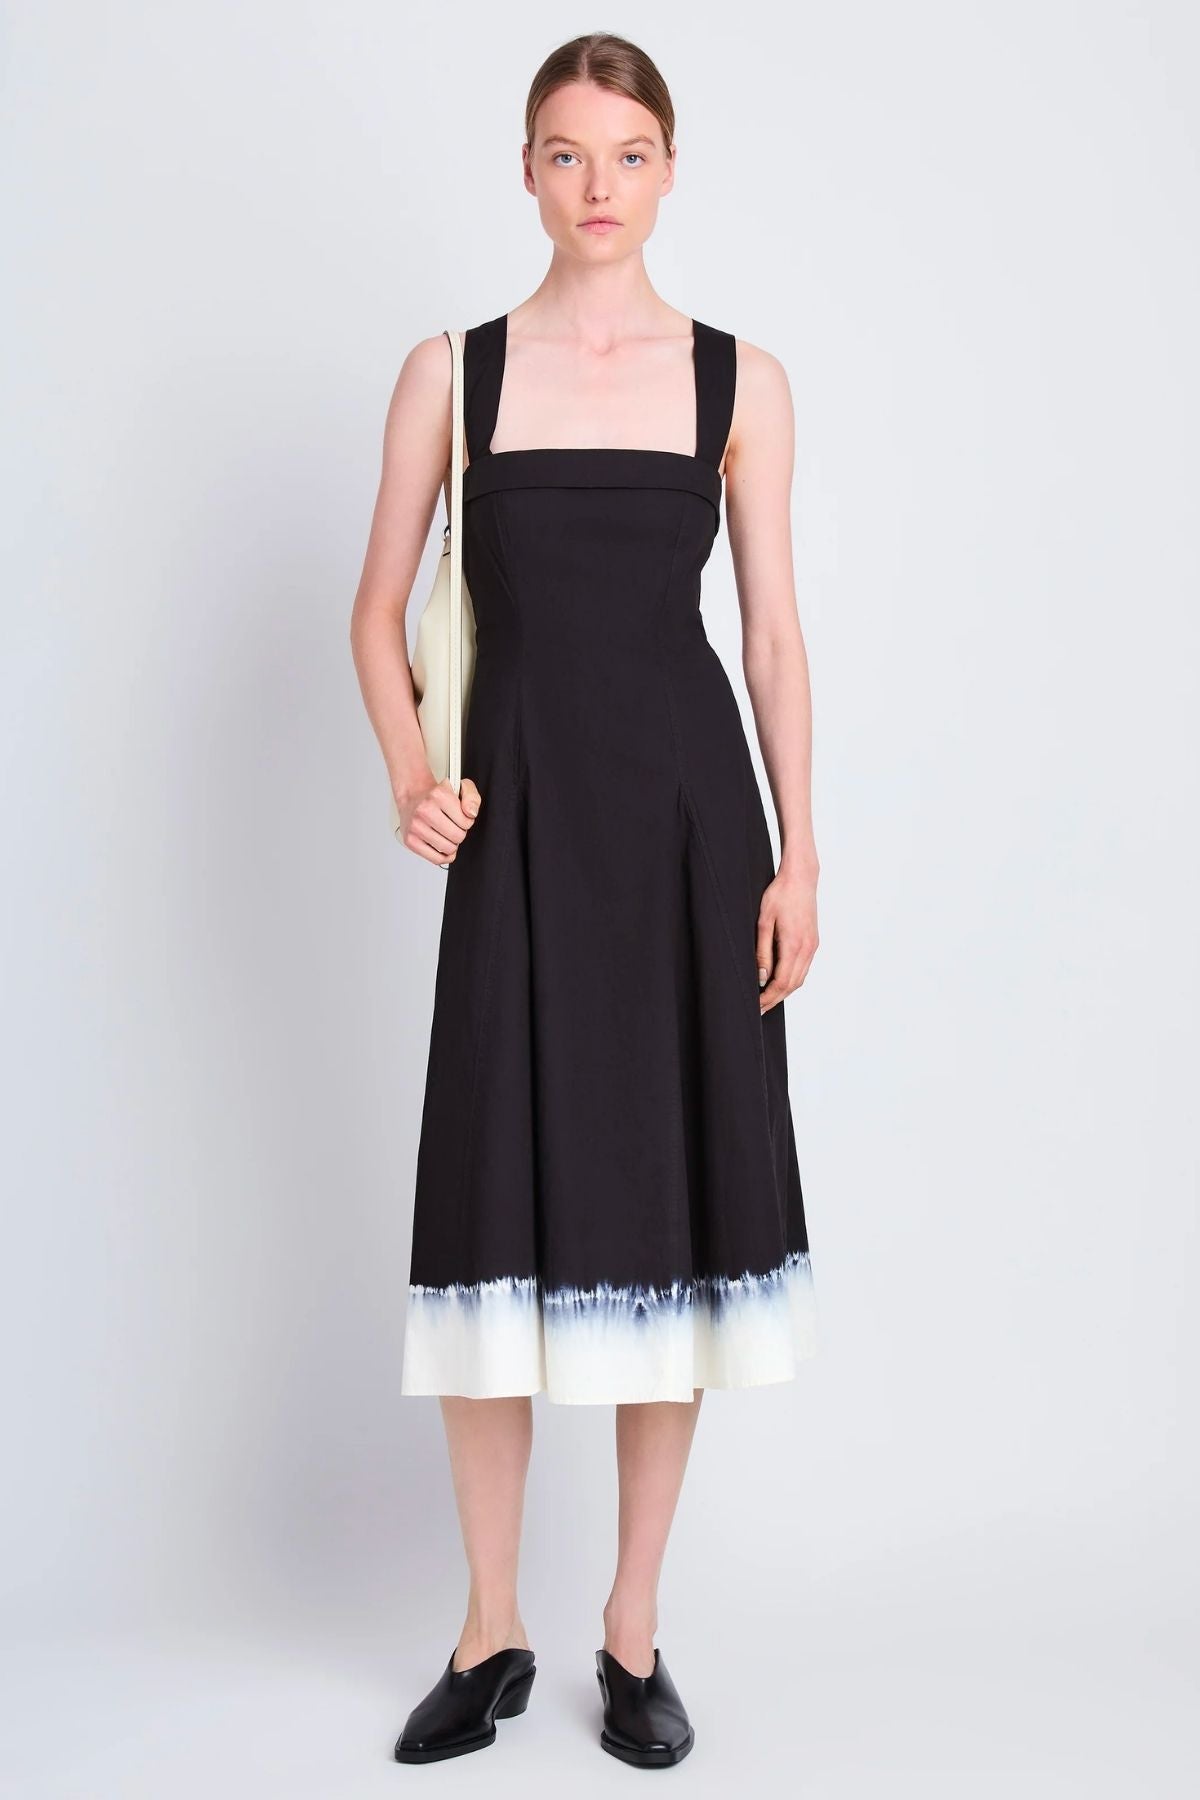 Proenza Schouler White Label Edie Dip Dye Cotton Dress - Black/ White